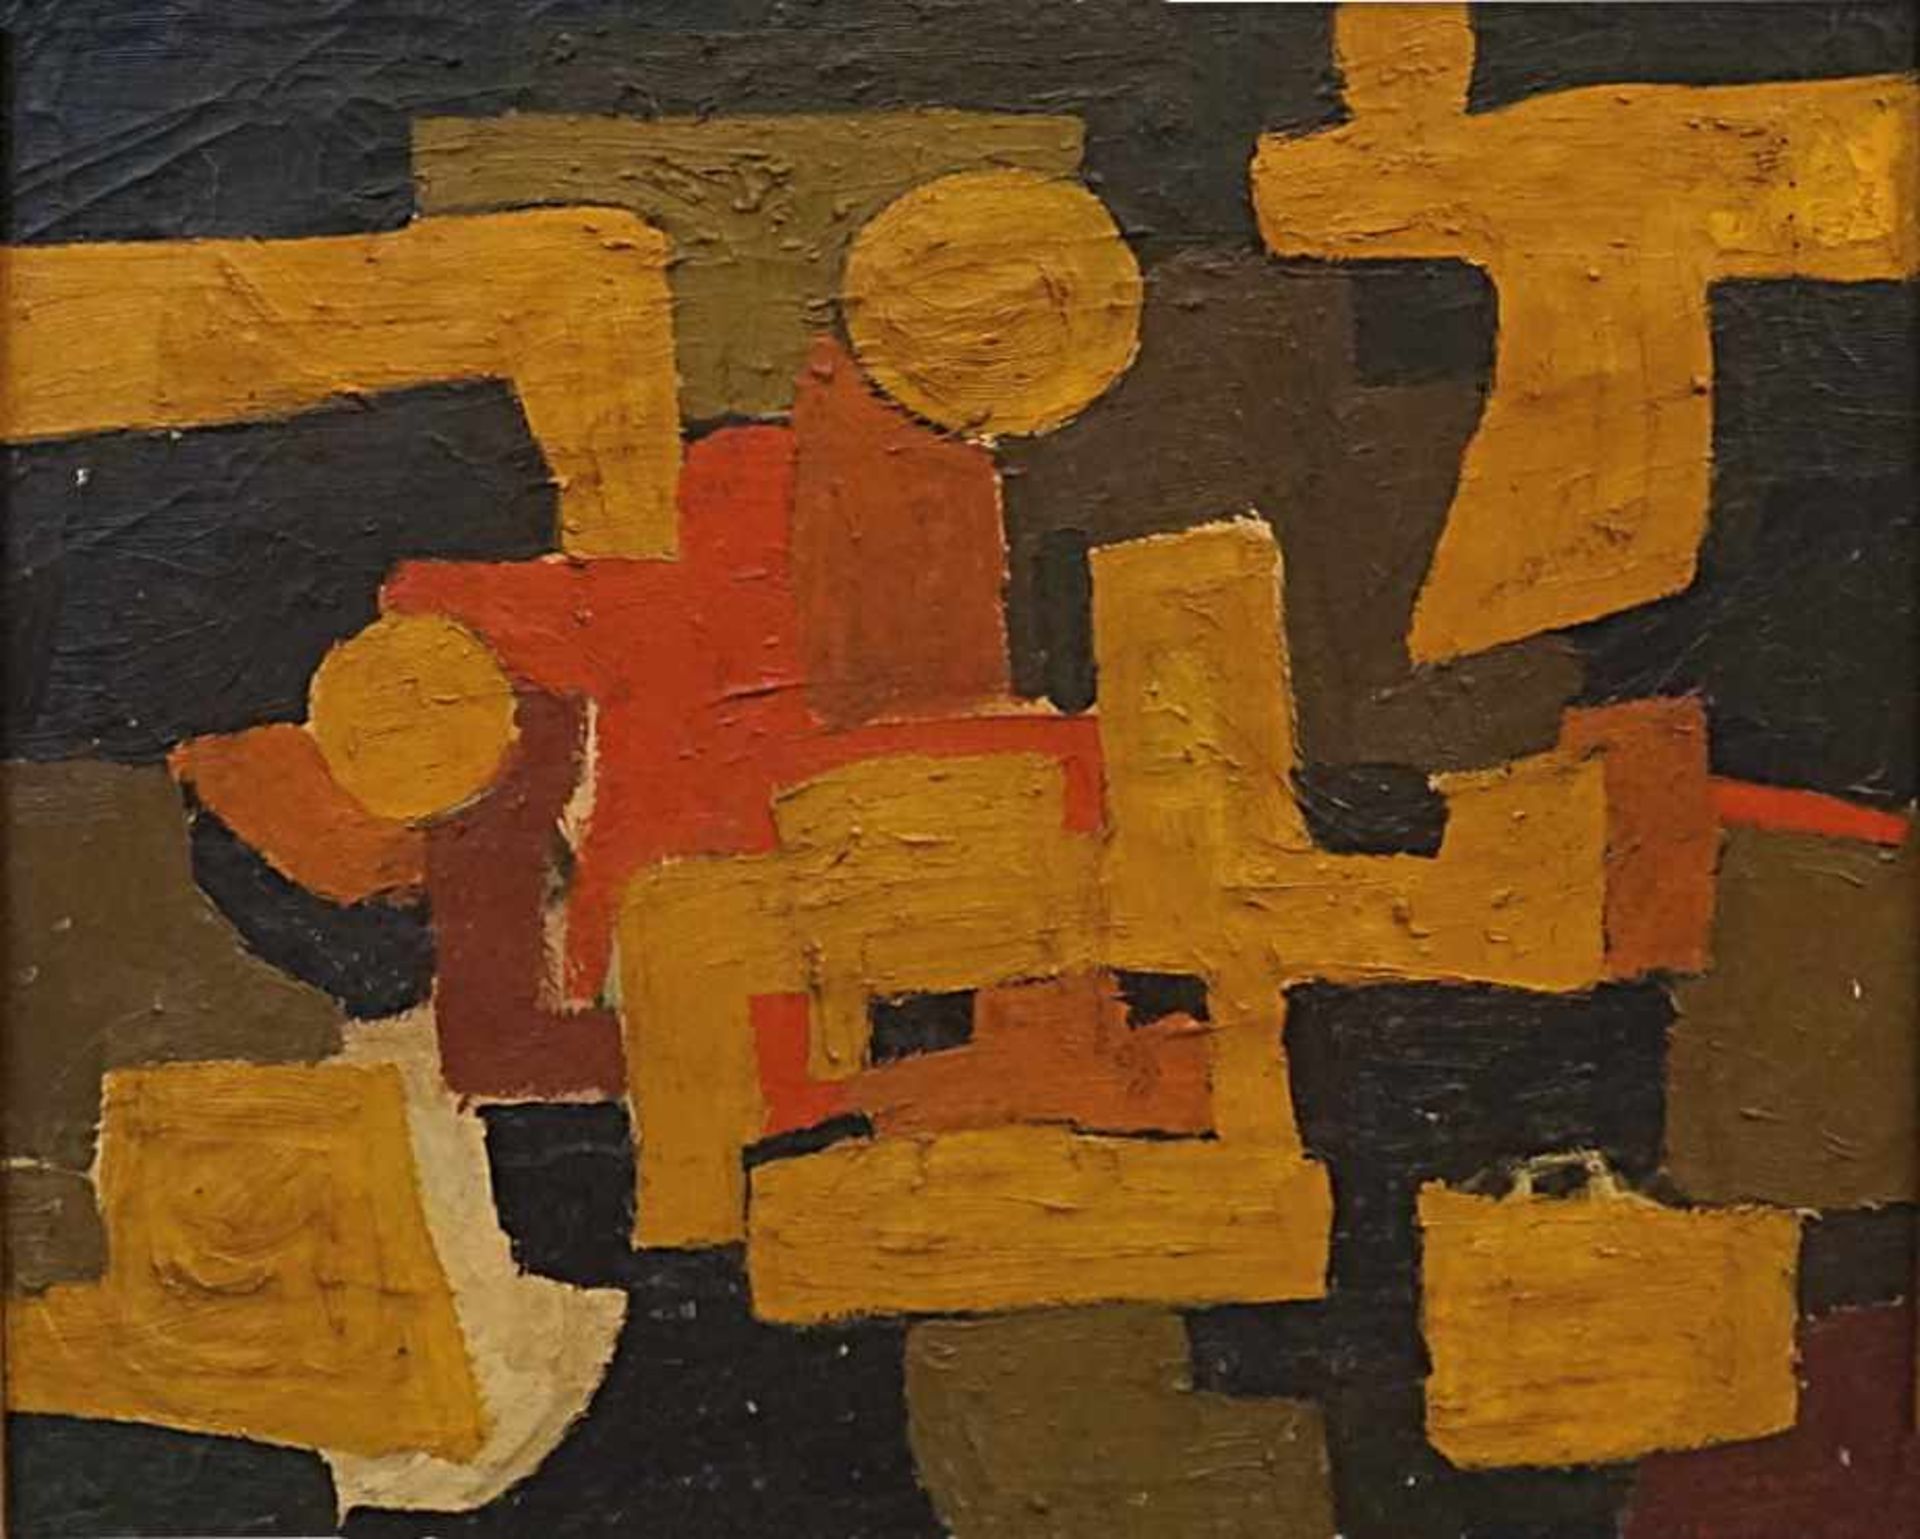 1 Ölgemälde "Abstrakte Komposition" R.u. sign. Serge POLIAKOFF(wohl 1900-1969) Öl/Lwd. ca. 60x70cm